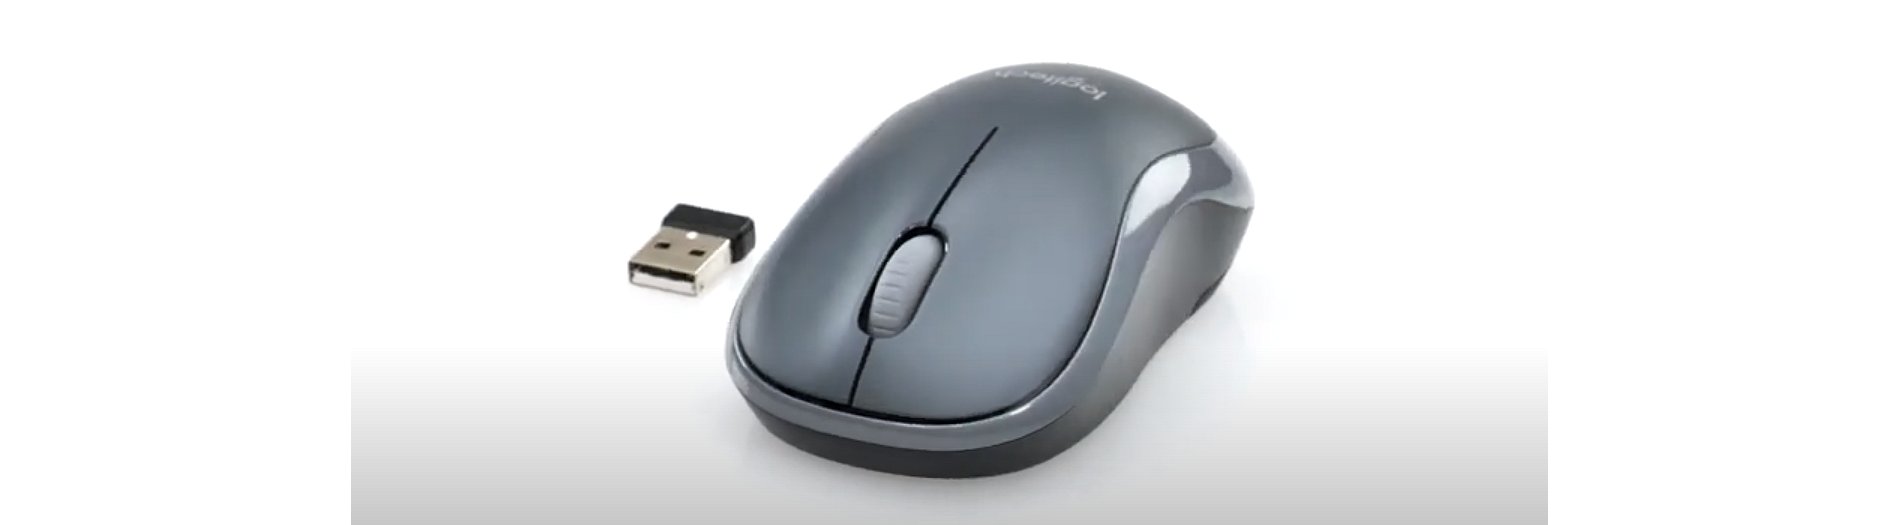 Acheter souris sans fil Logitech - Souris pour ordinateur Grenoble